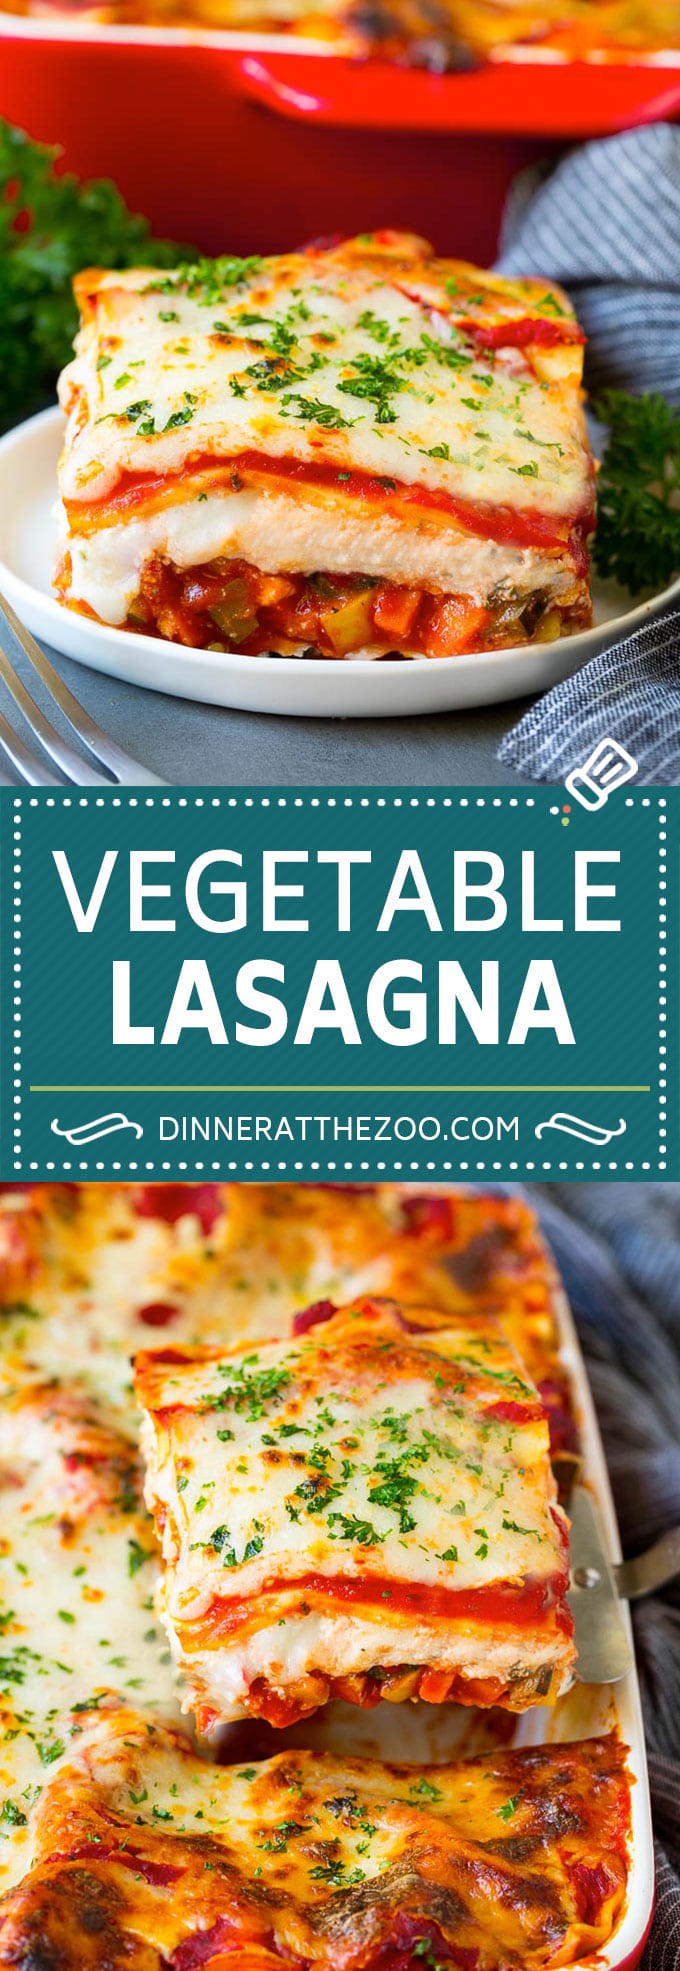 Receta de lasaña de verduras |  Lasaña vegetariana #lasaña # vegetariana # verduras # queso # pasta # cena #dinneratthezoo